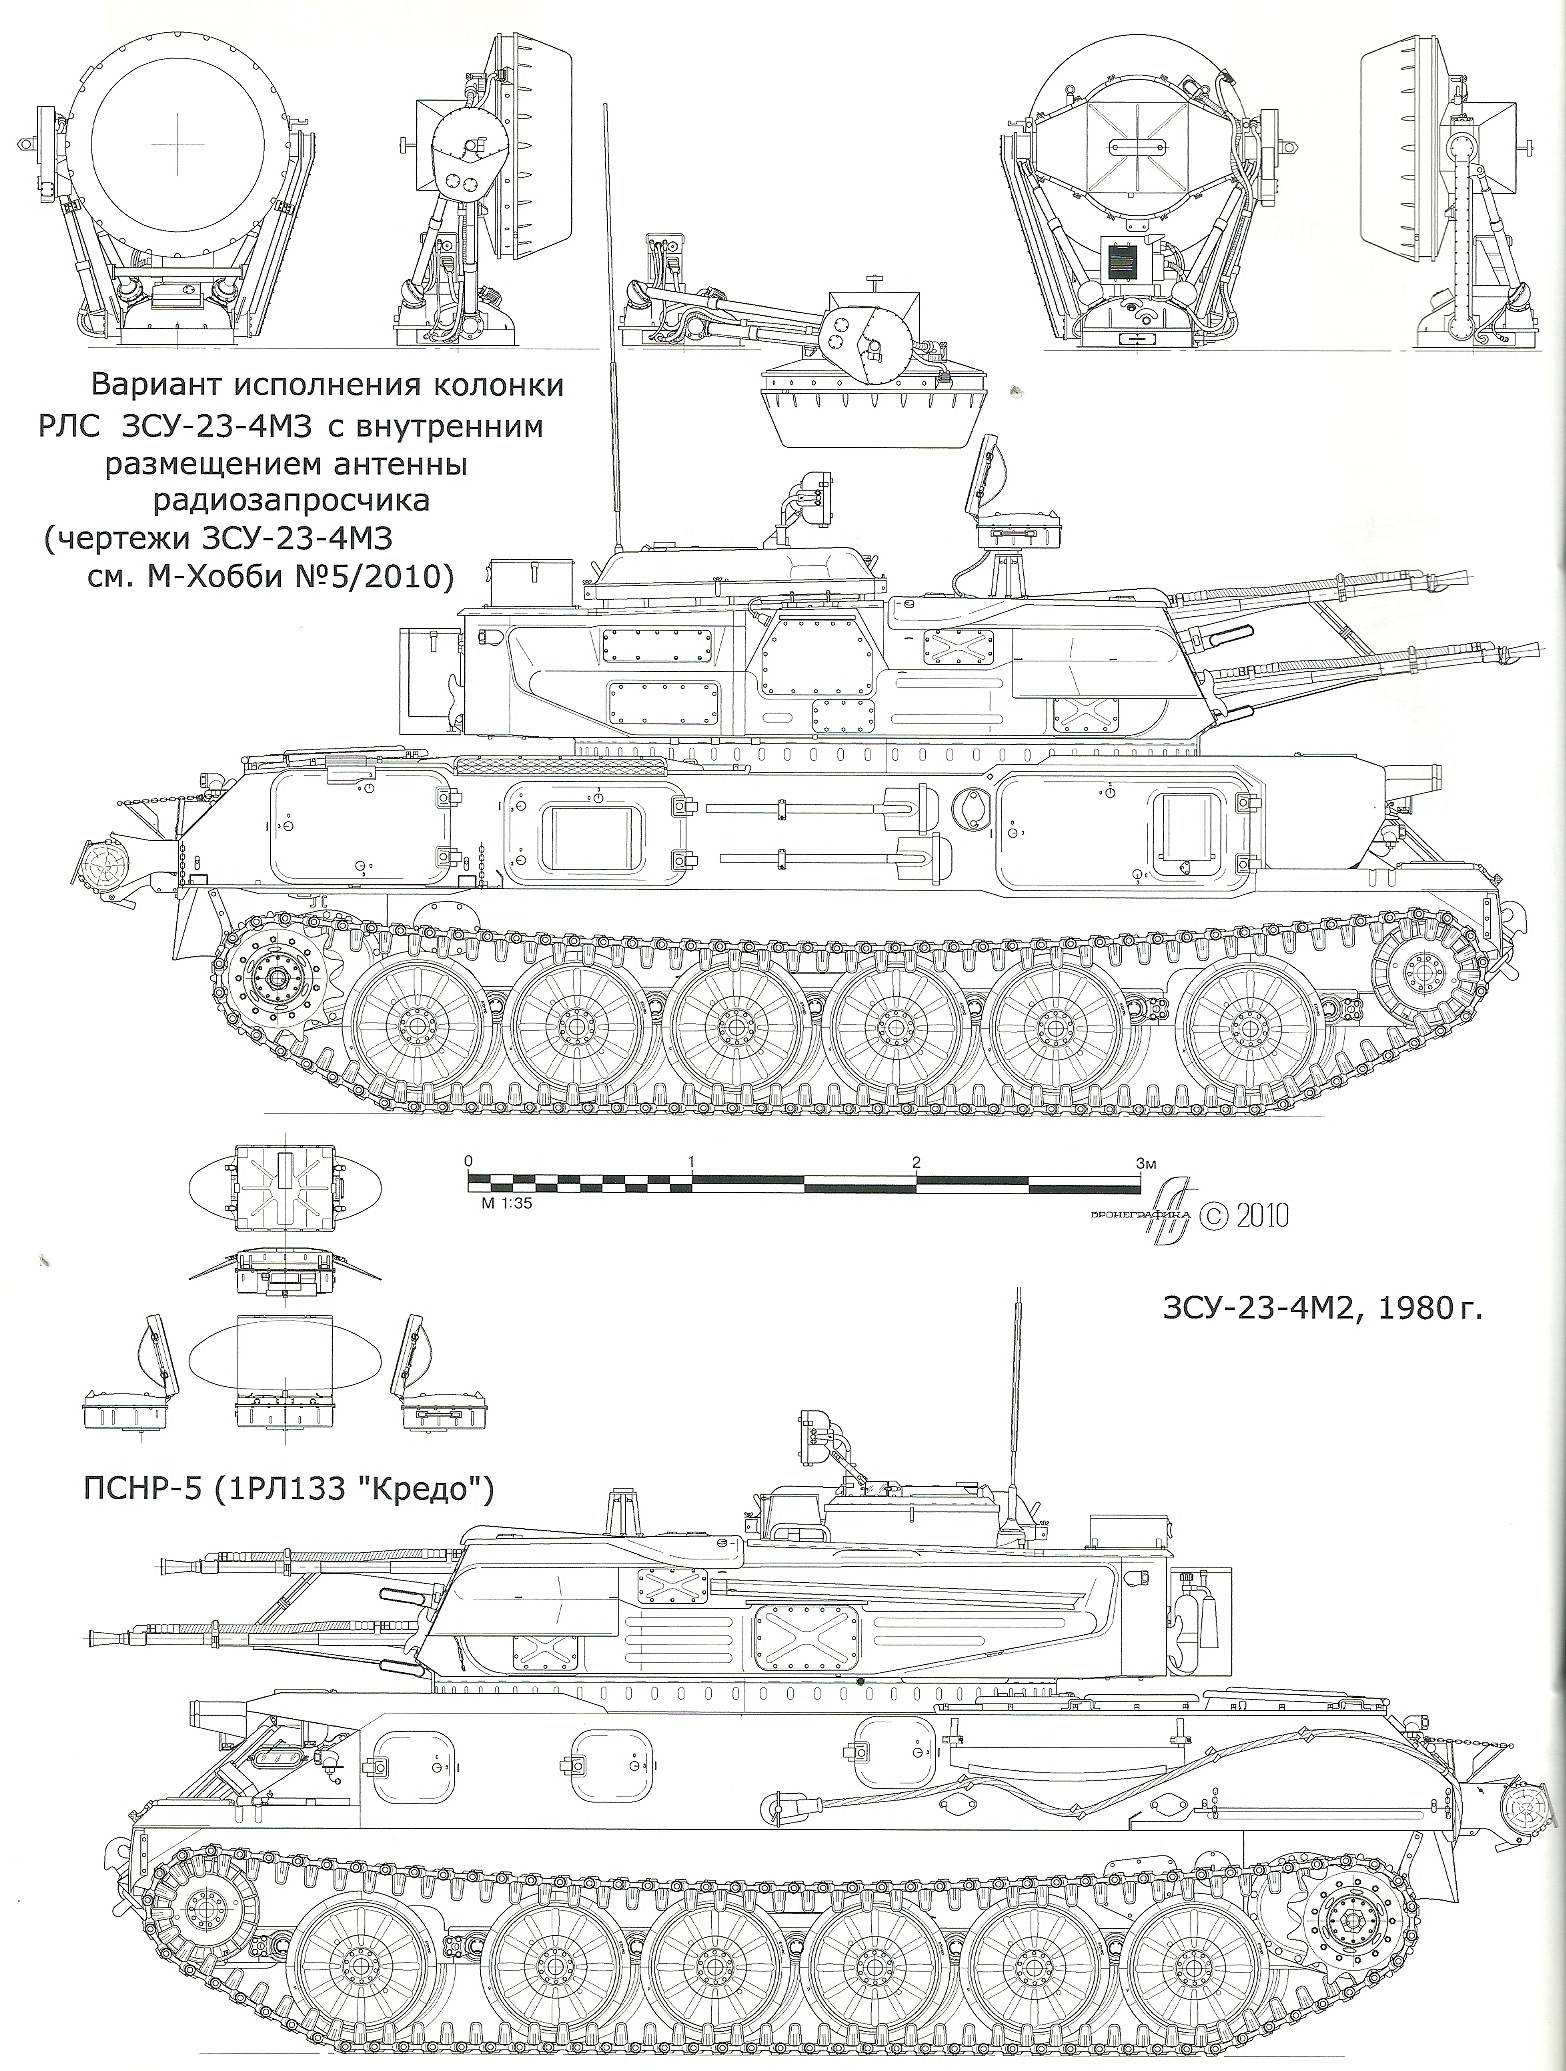 Зсу-23-4 шилка: зенитная самоходная установка, технические характеристики (ттх), калибр, скорострельность